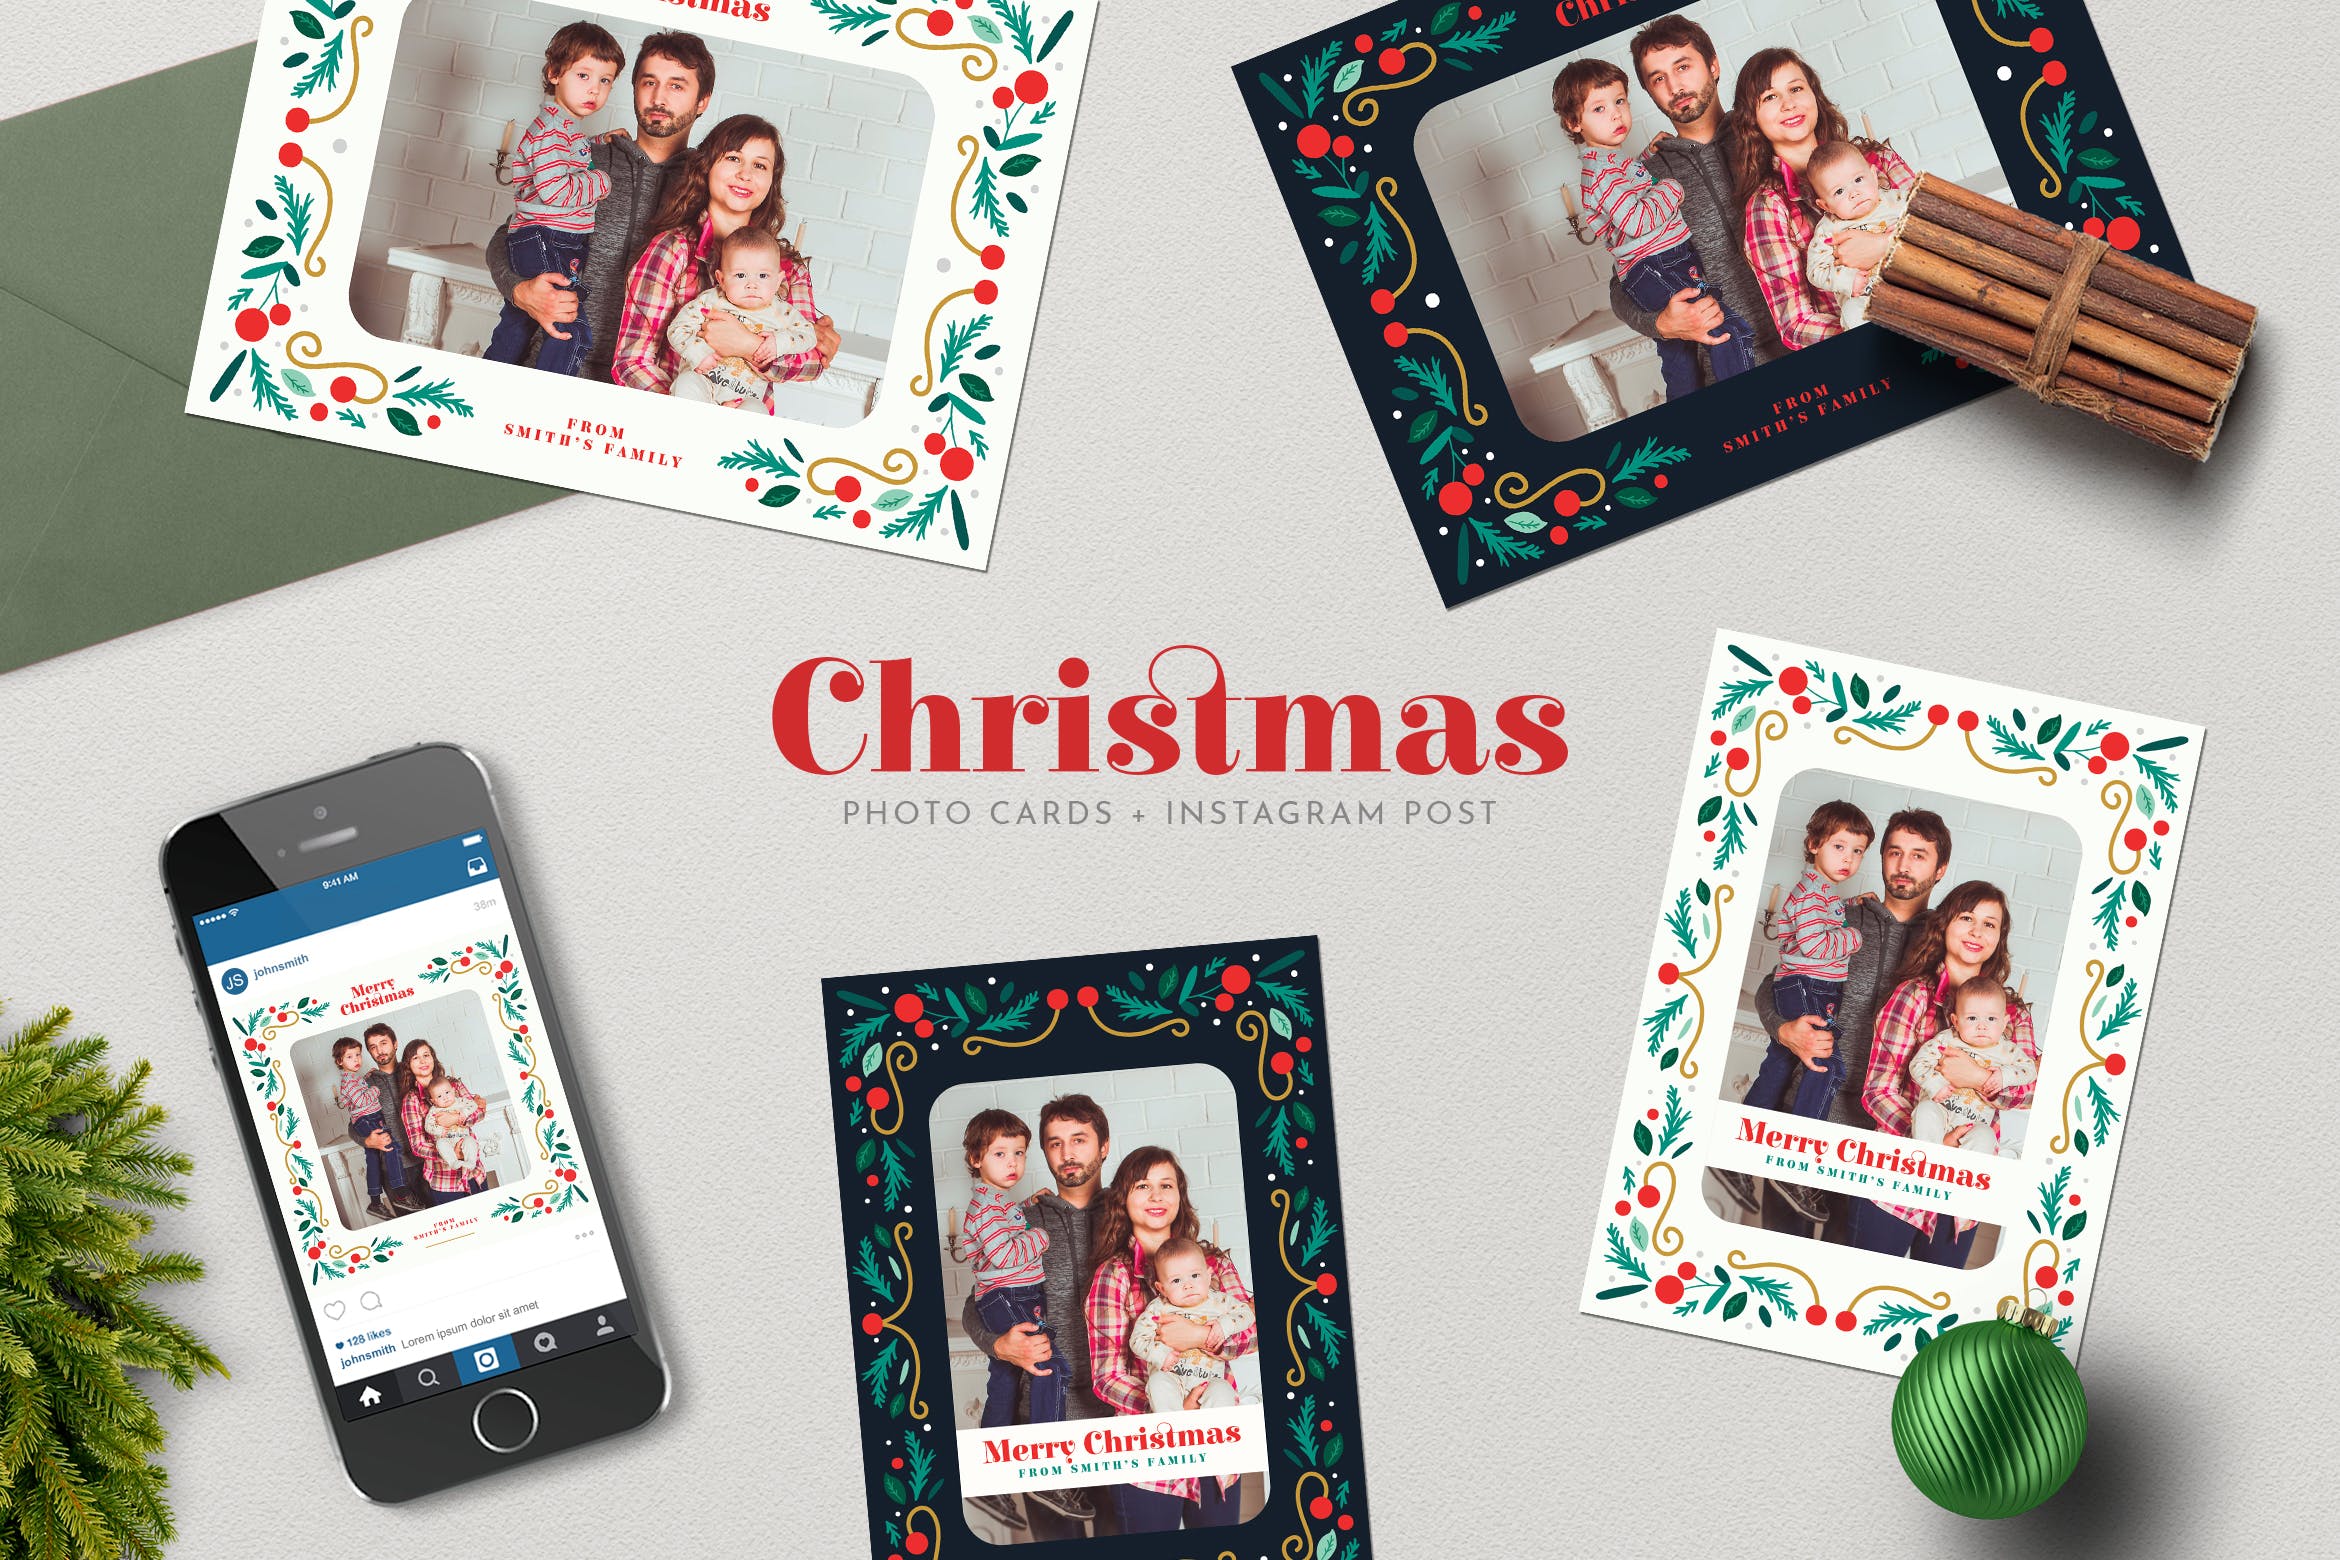 圣诞节照片明信片&Instagram贴图设计模板第一素材精选 Christmas PhotoCards +Instagram Post插图